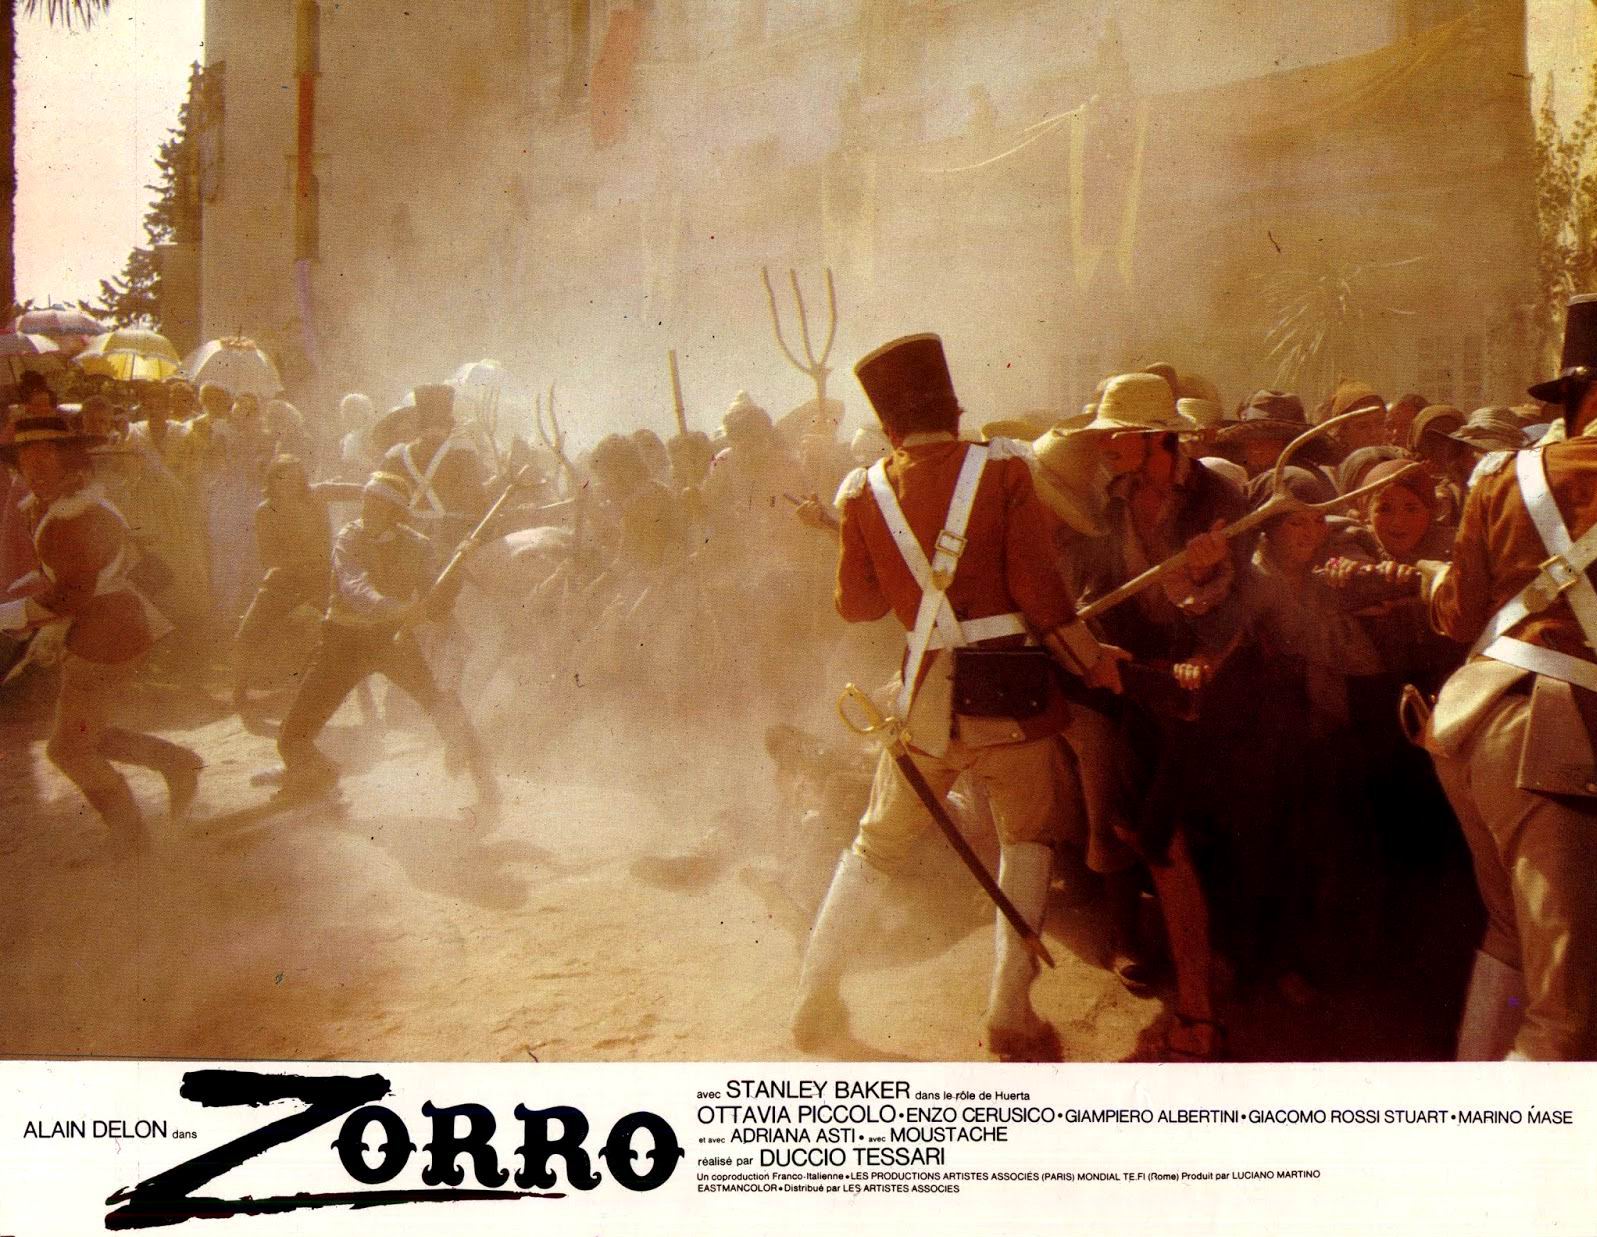 Zorro (1974) Duccio Tessari - Zorro (29.07.1974 / 1974)